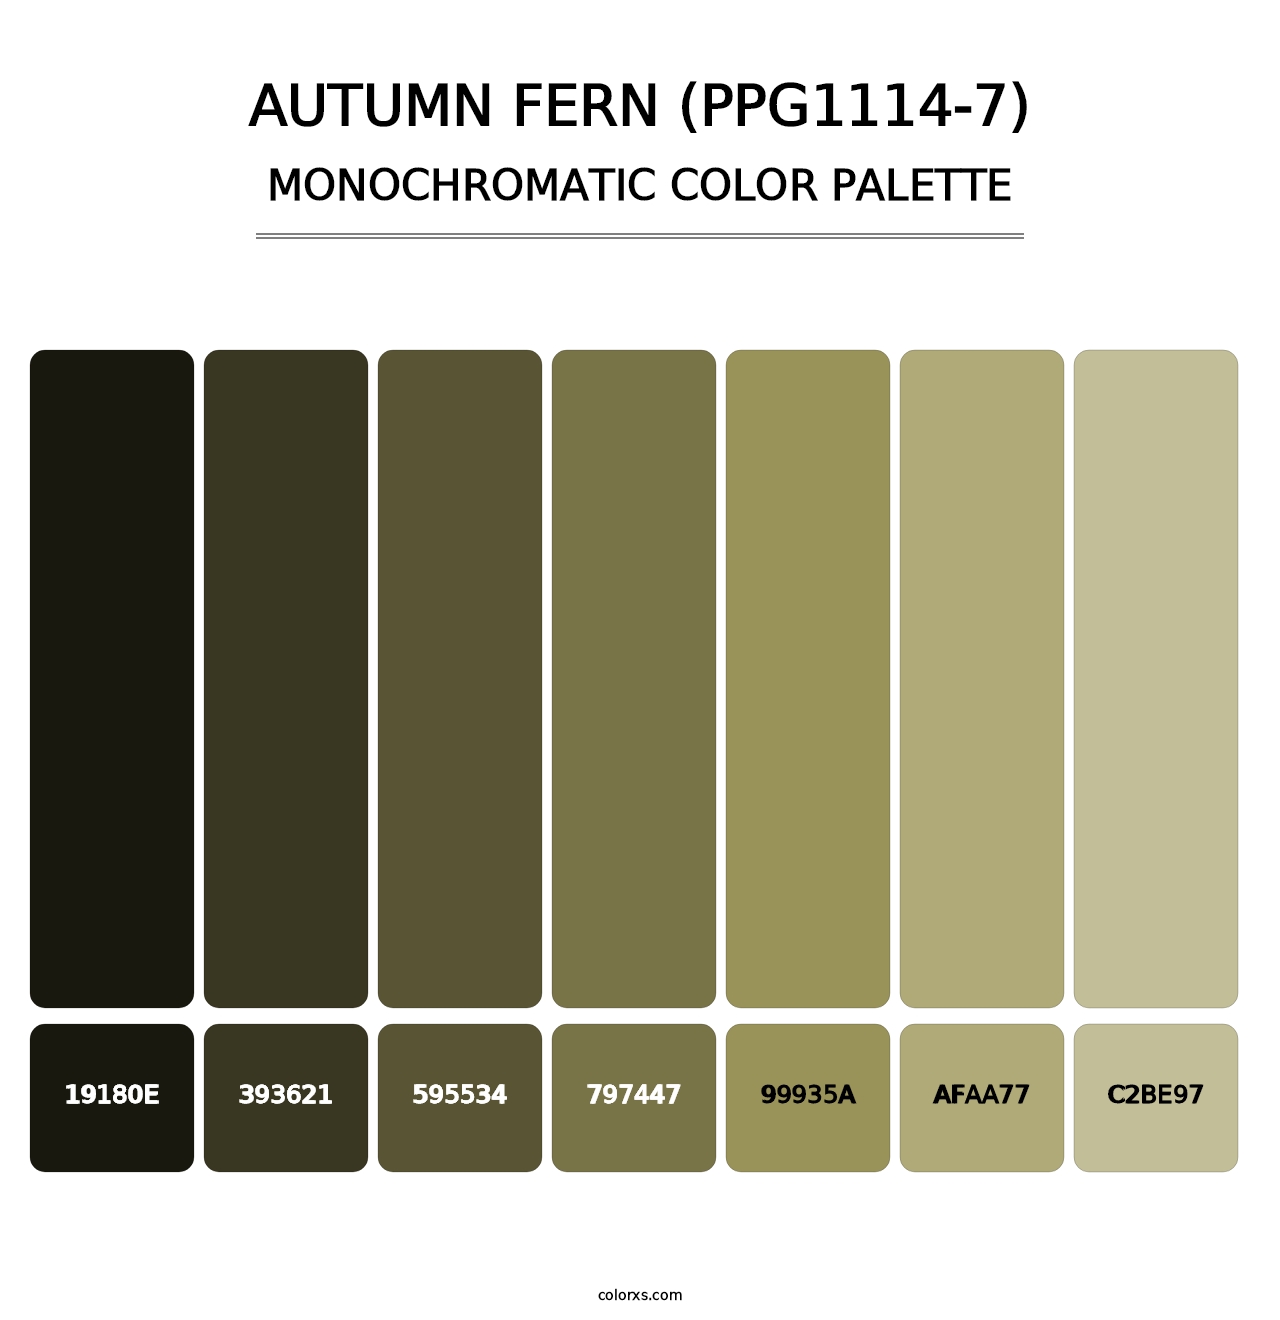 Autumn Fern (PPG1114-7) - Monochromatic Color Palette